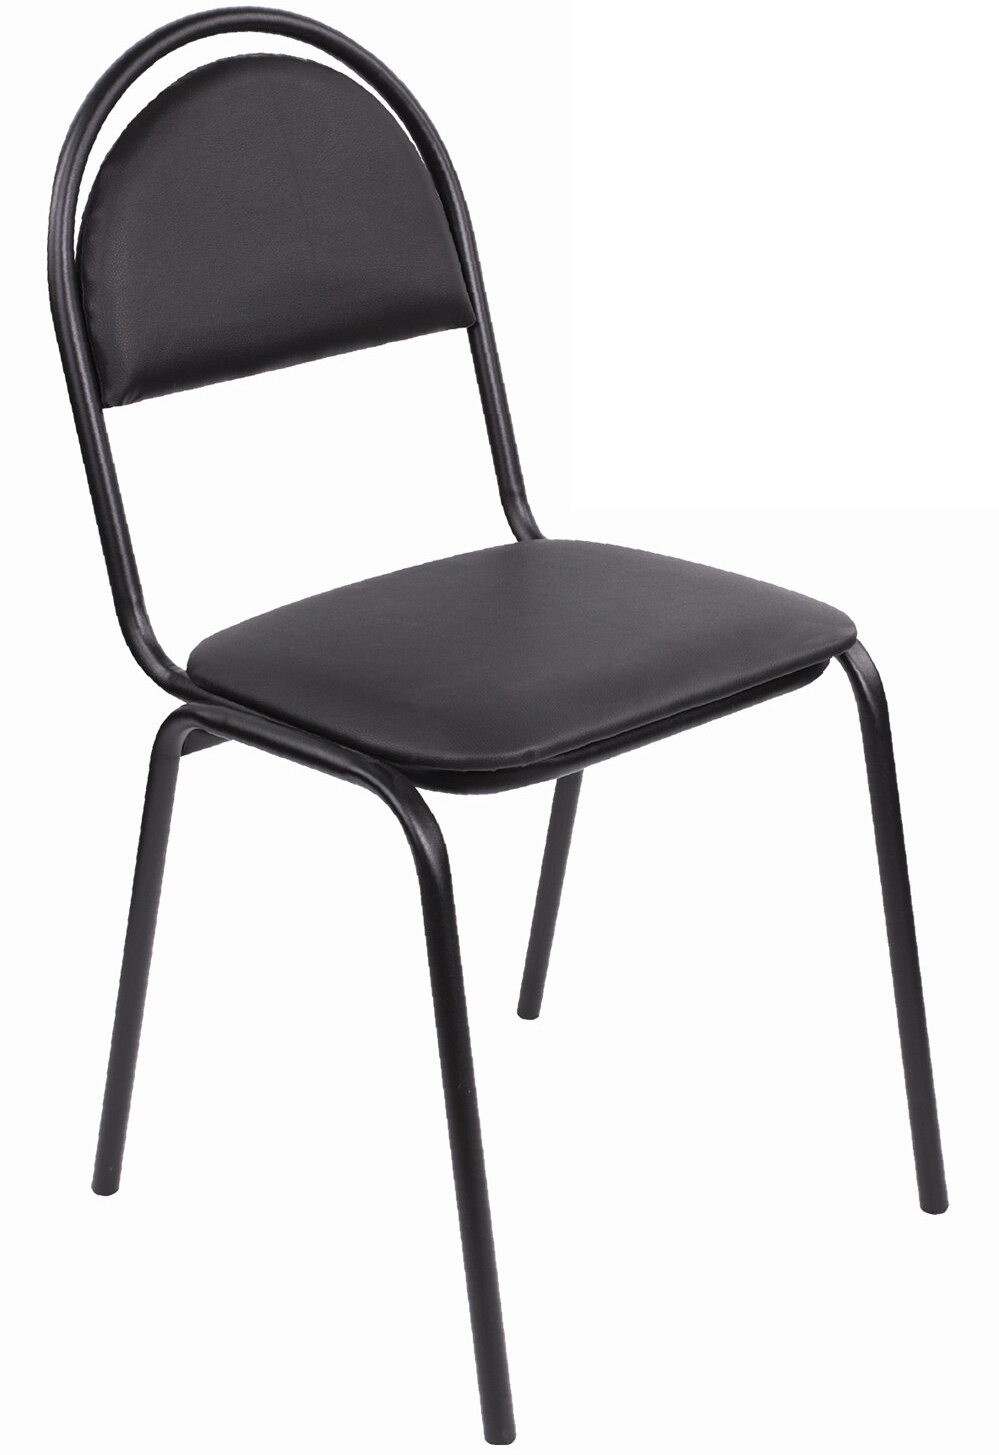 стул офисный easy chair стандарт черный искусственная кожа металл черный